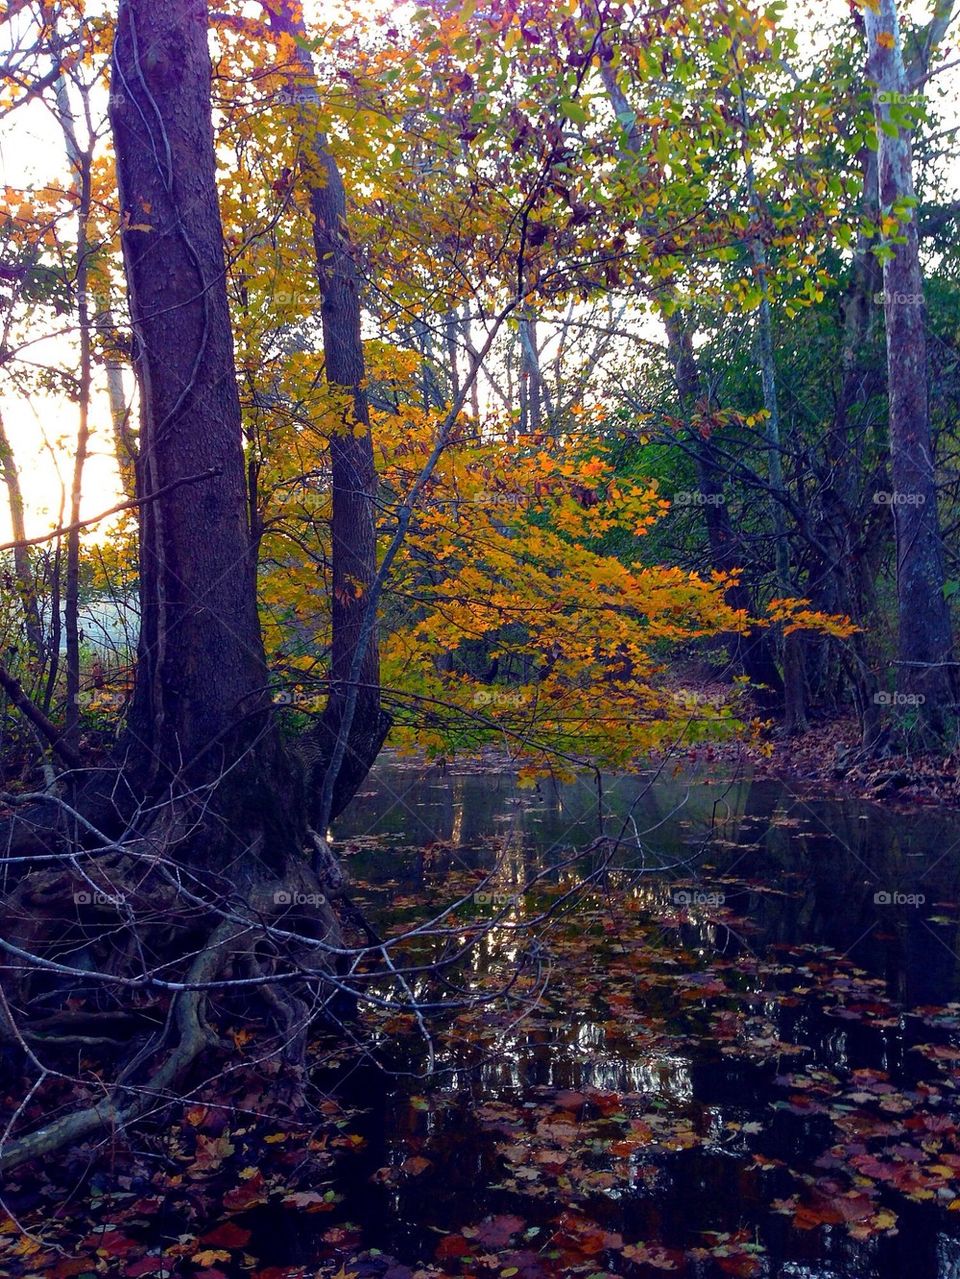 Fall at the creek